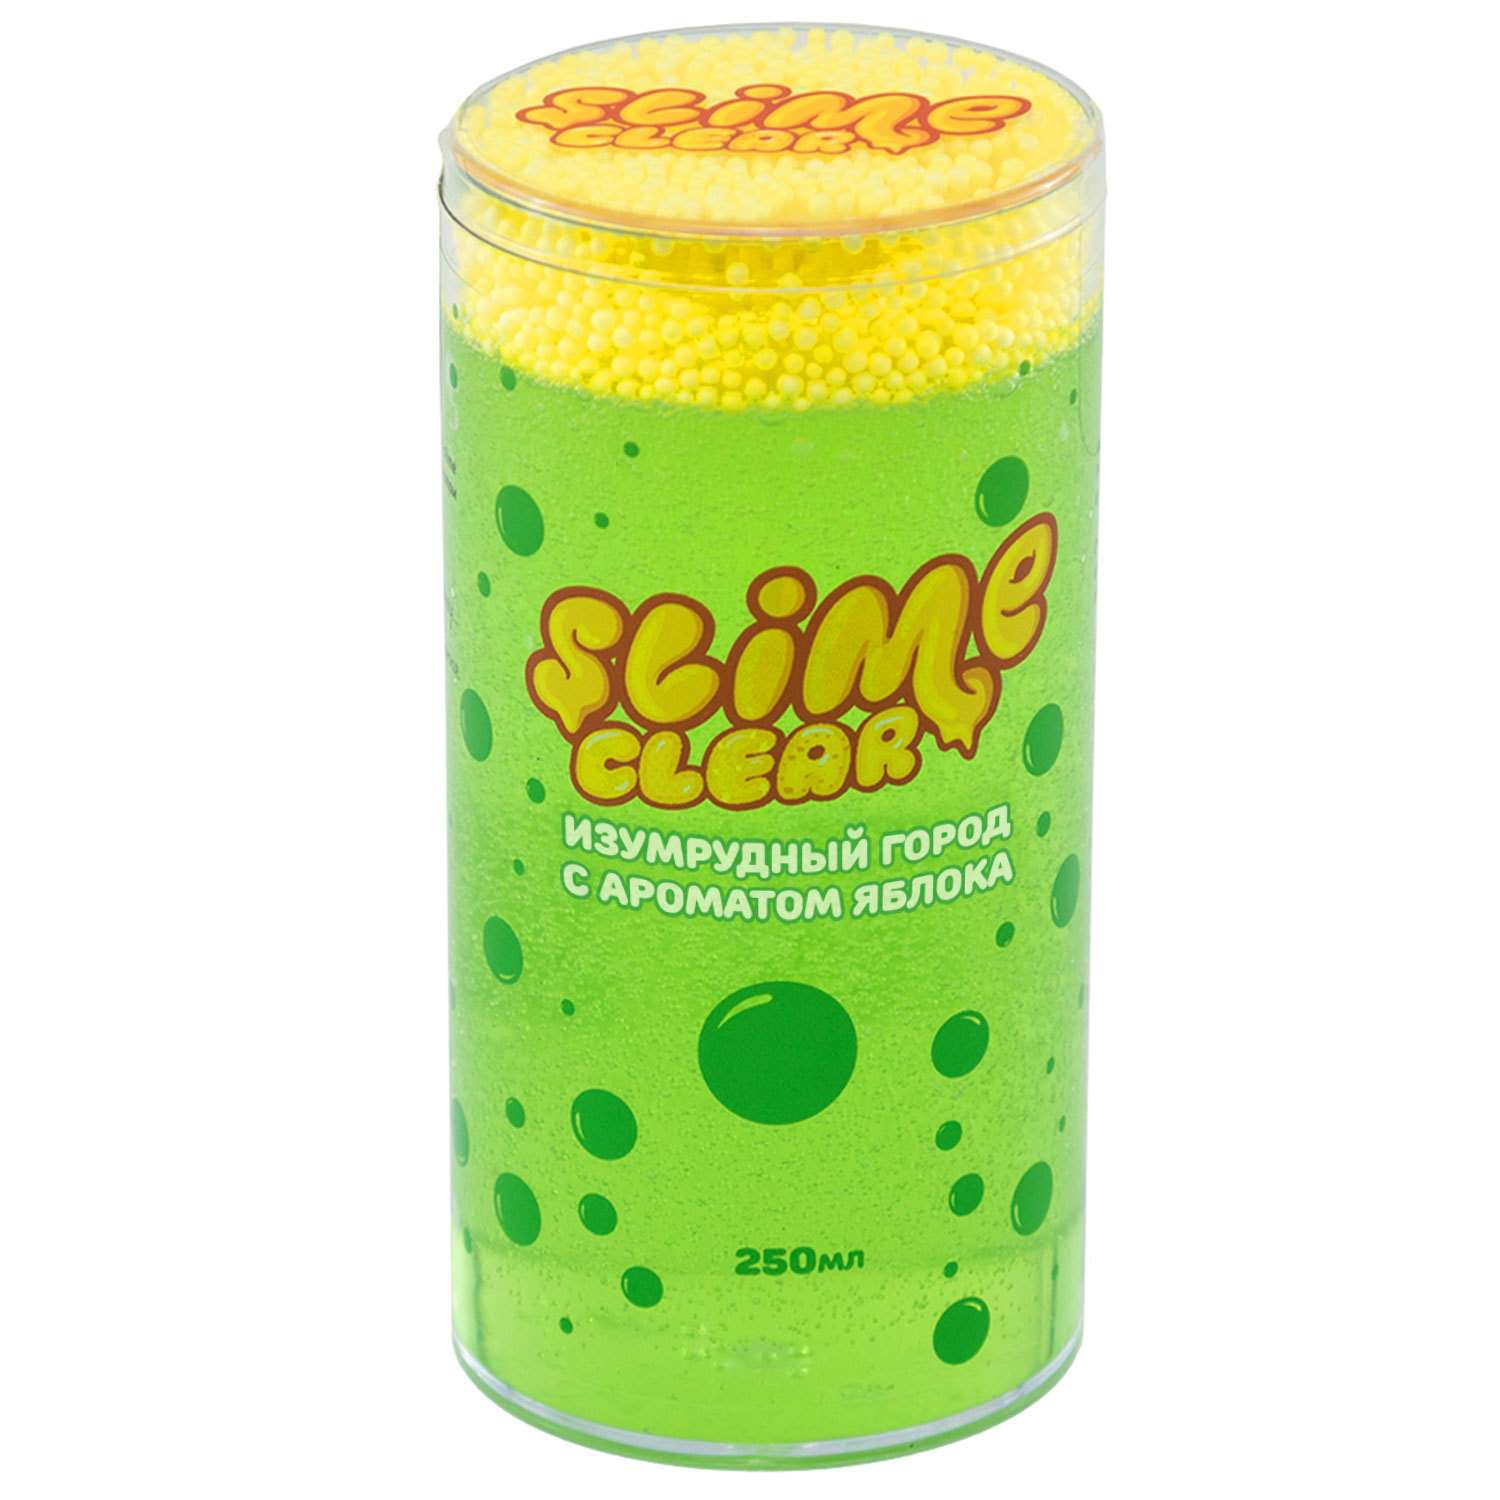 Лизун Slime Ninja Clear аромат яблока 250г S300-36 - фото 1